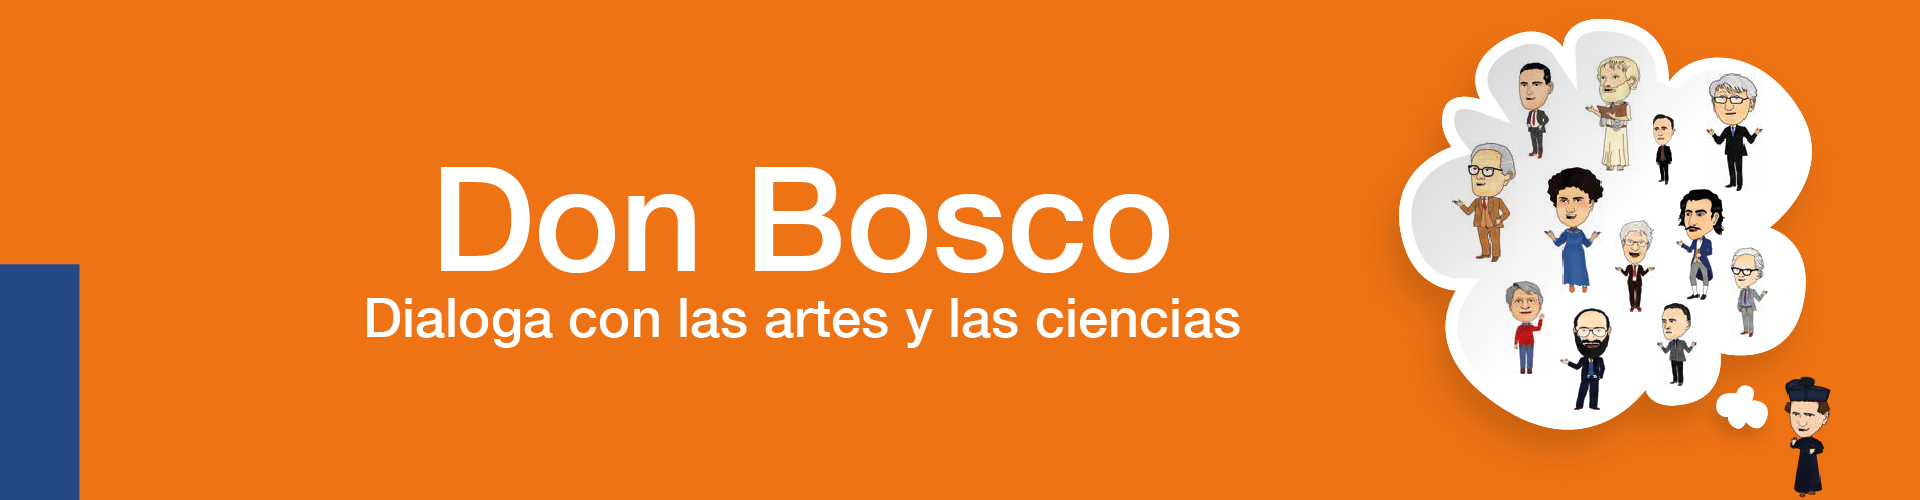 Portada del Libro Don Bosco dialoga con las artes y las ciencias